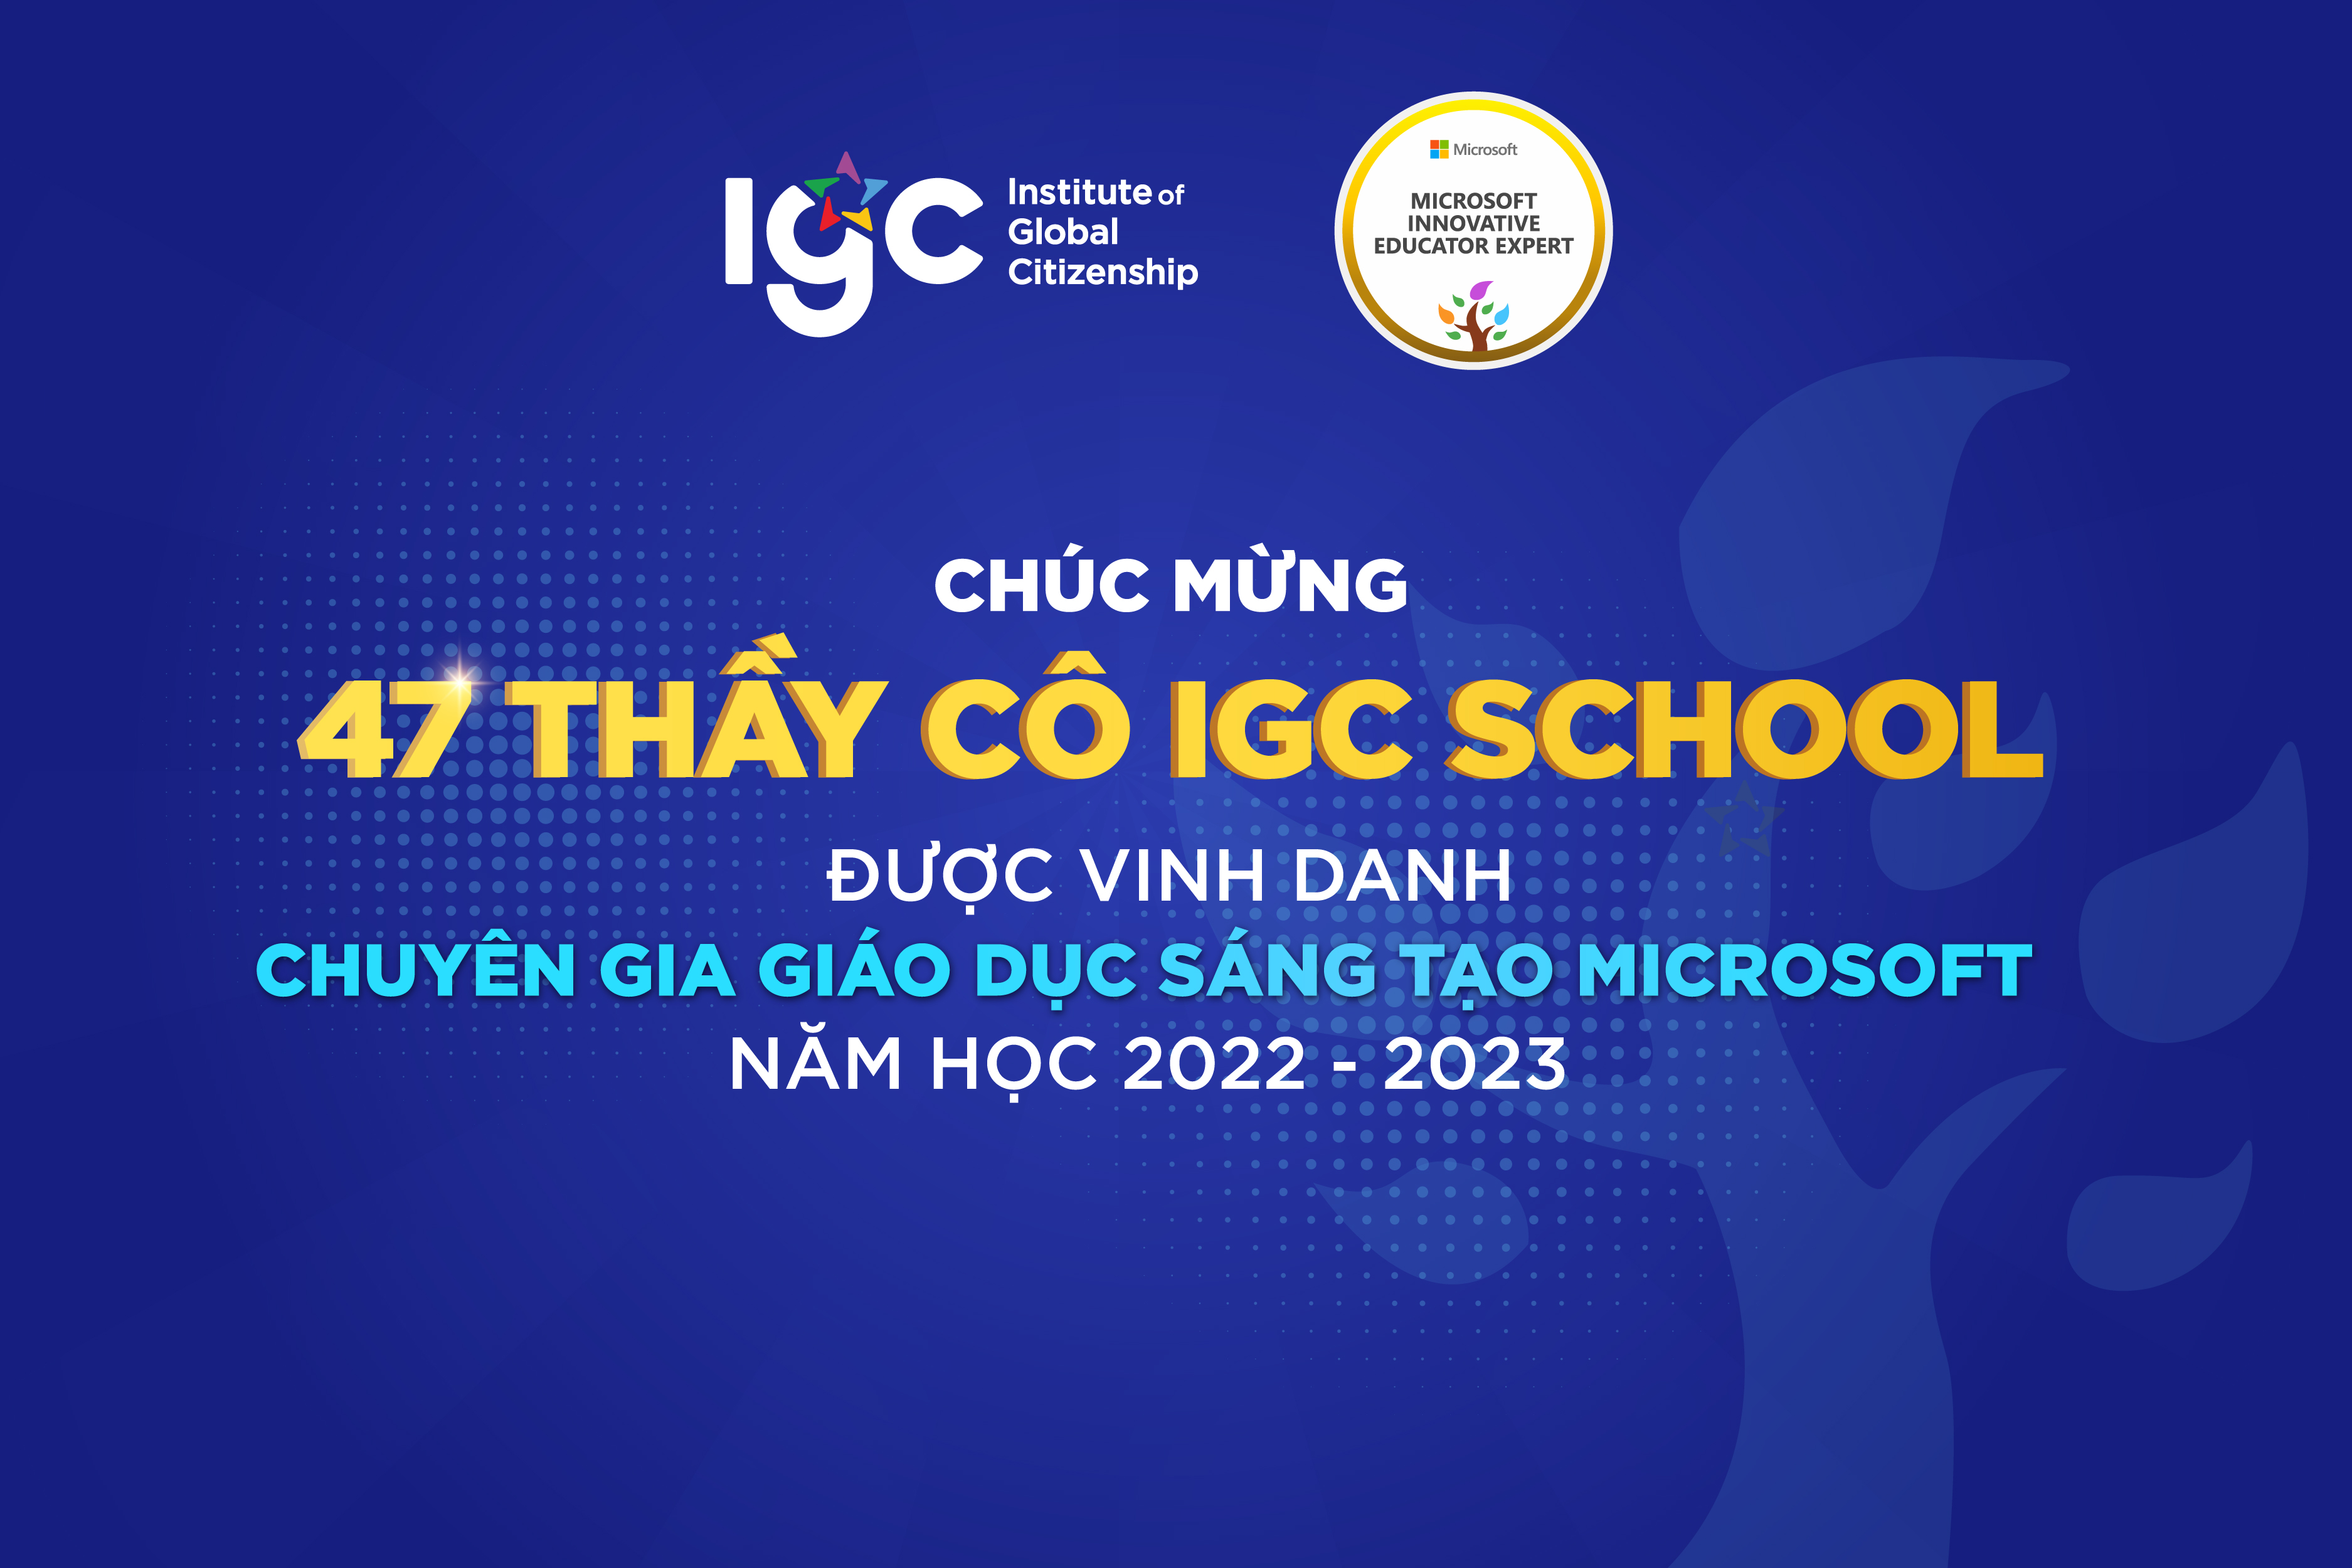 Chúc mừng 47 thầy cô IGC School được vinh danh là "Chuyên gia Giáo dục Sáng tạo Microsoft" năm học 2022-2023